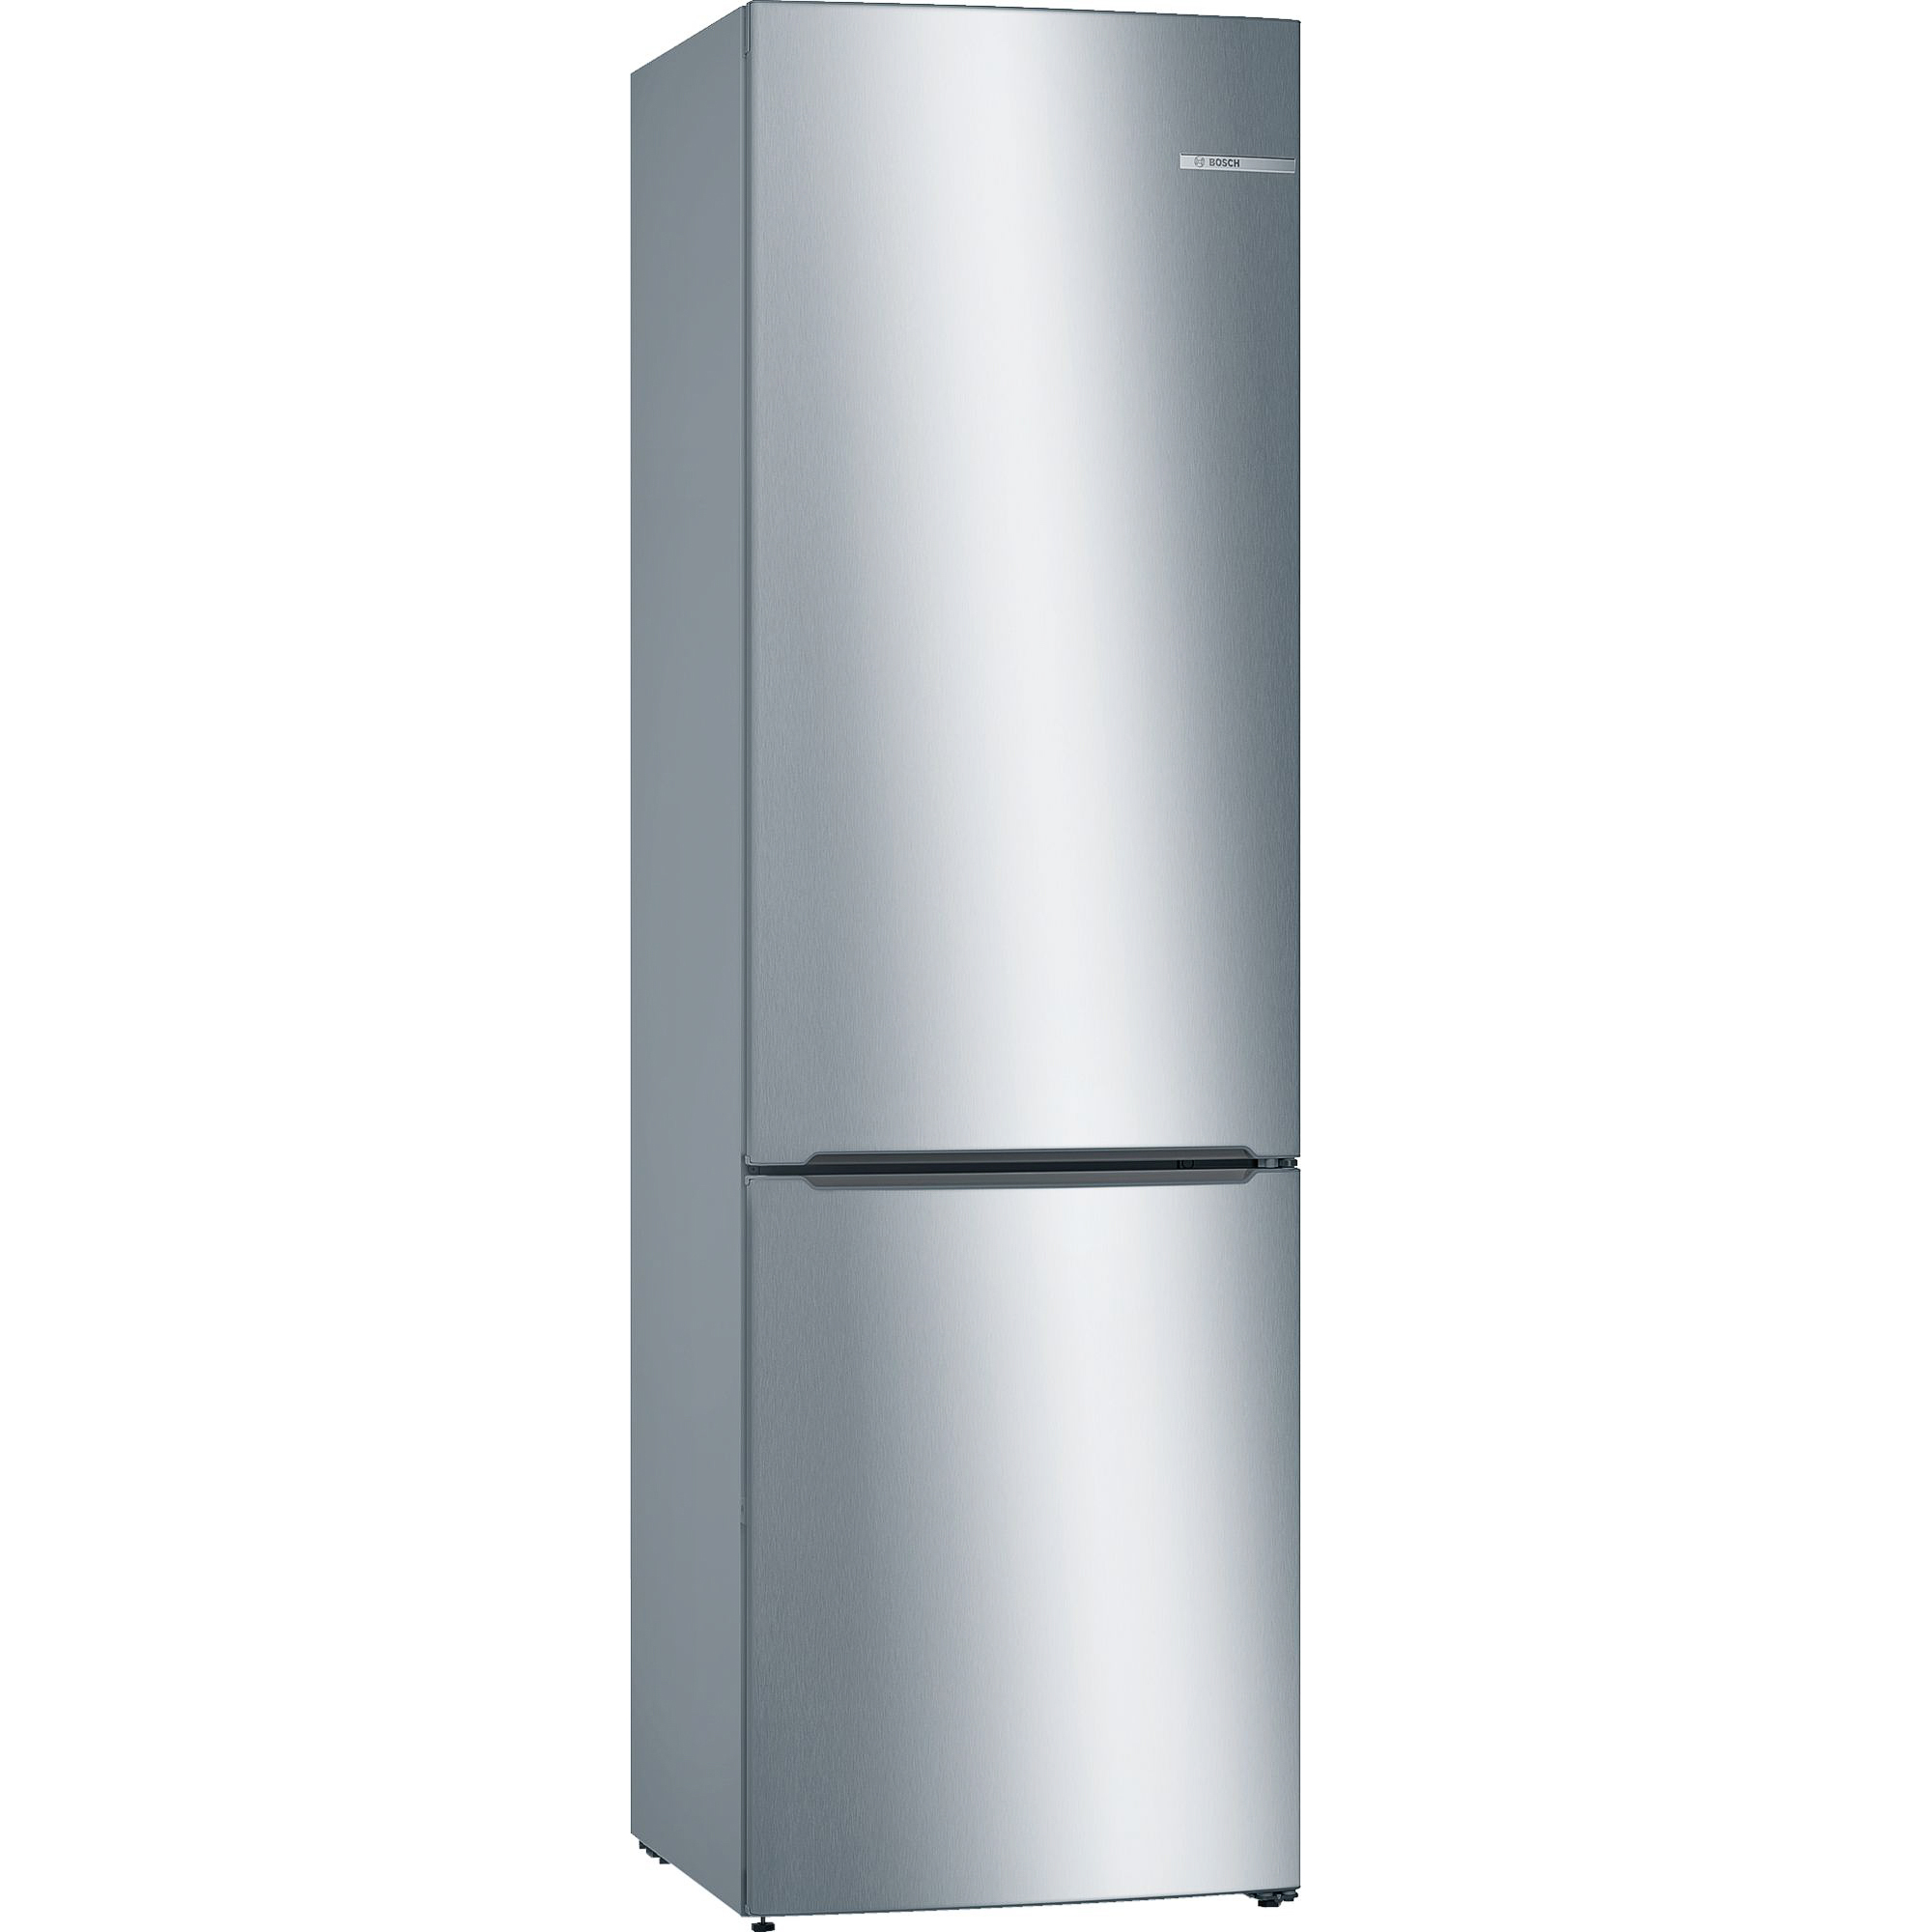 Интернет магазин холодильников в москве недорого. Холодильник бош kgn76ai22r. Холодильник Bosch kgn36nl21r. Холодильник Bosch kgn56vi20r. Холодильник Bosch serie|6 NATURECOOL KGE 39 al 33 r.